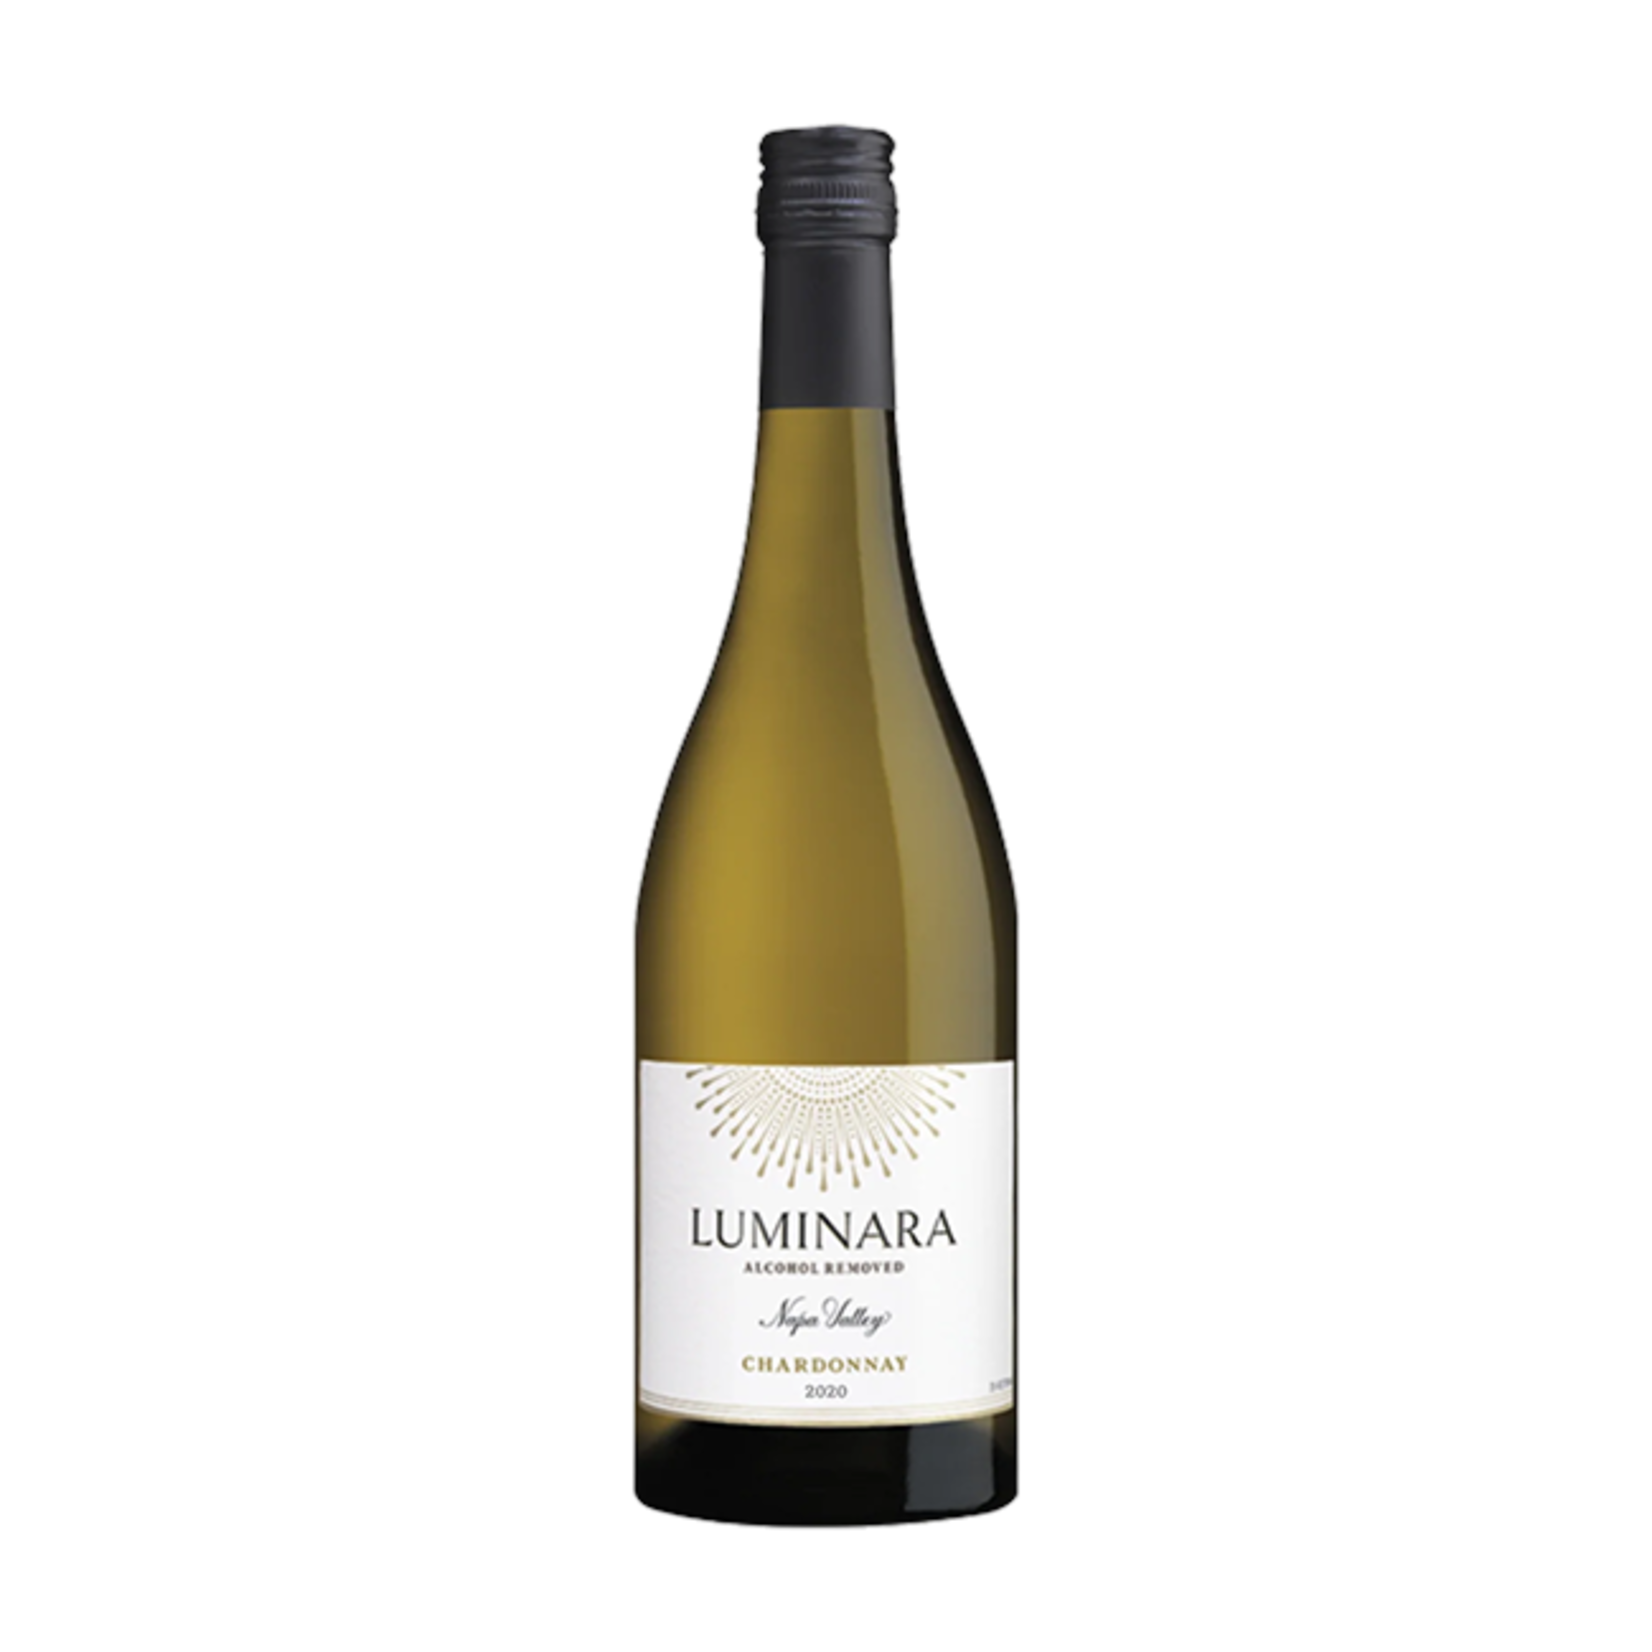 Luminara- Napa Valley Chardonnay